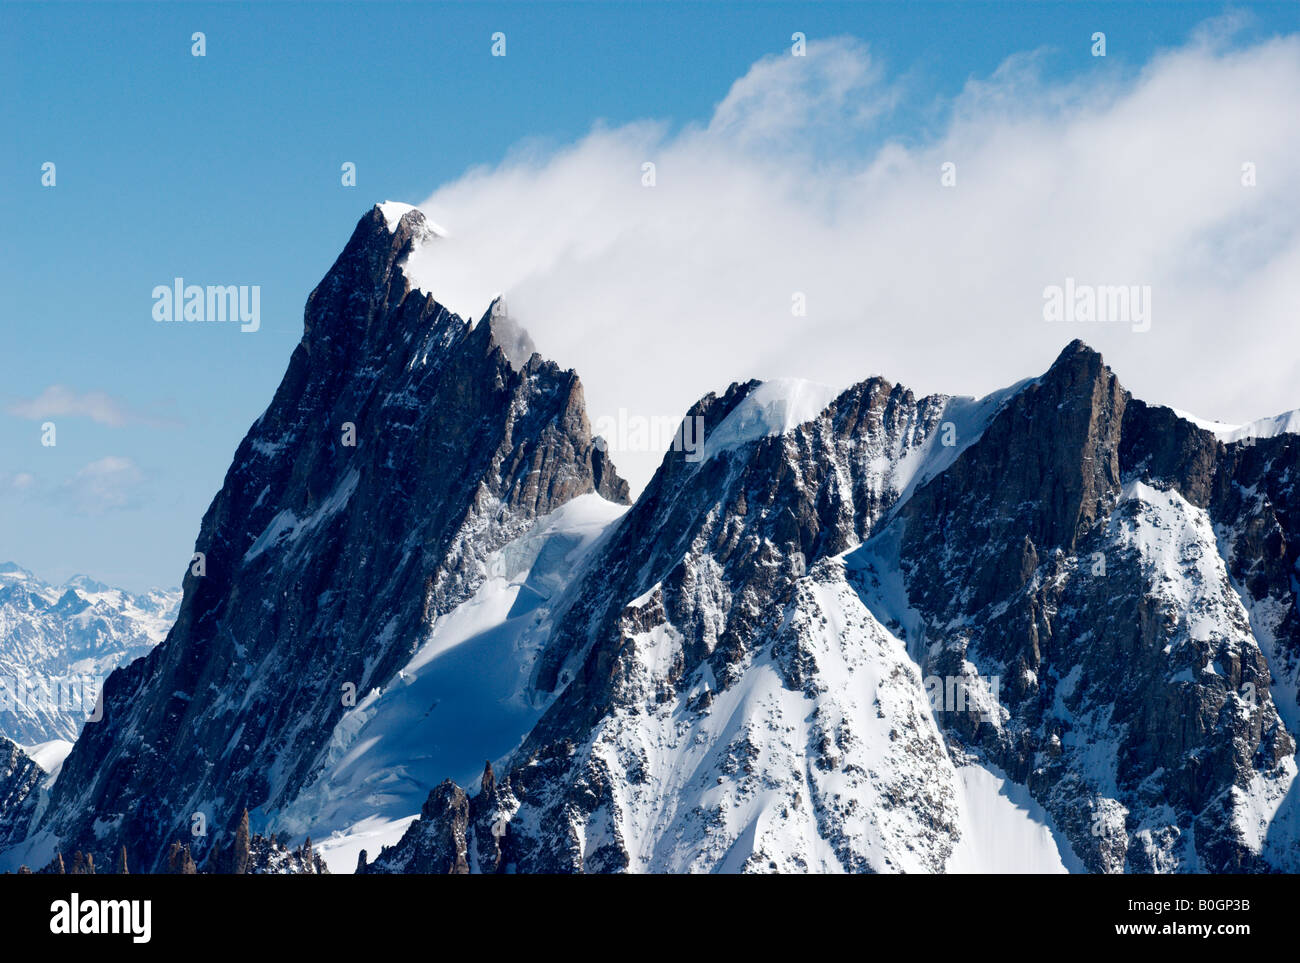 Fronte nord delle Grandes Jorasses (4208m) in inverno, Chamonix, Francia Foto Stock